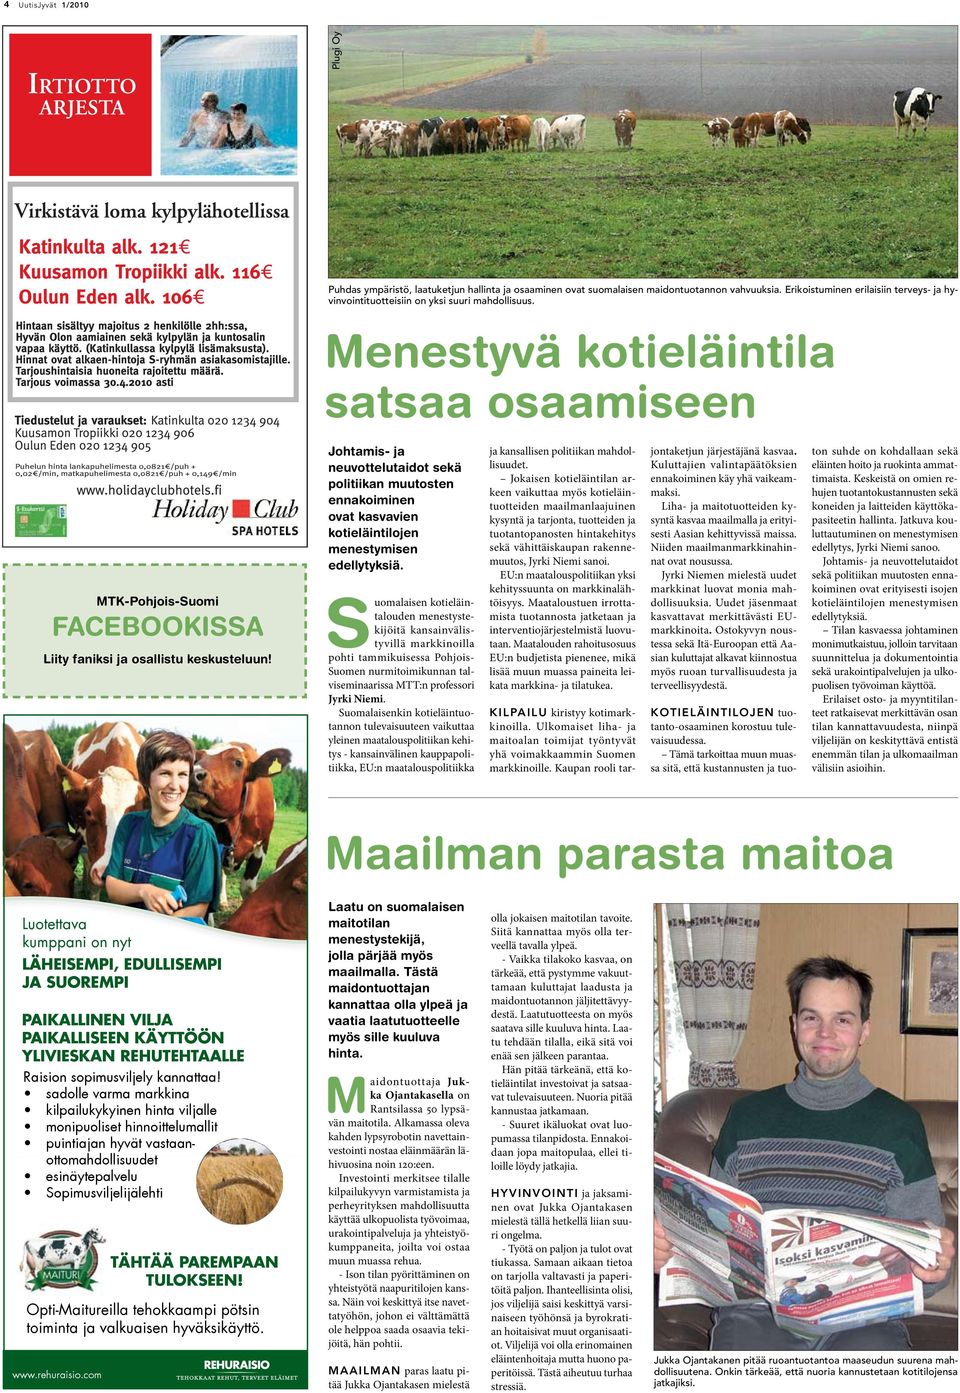 Menestyvä kotieläintila satsaa osaamiseen MTK-Pohjois-Suomi FACEBOOKISSA Liity faniksi ja osallistu keskusteluun!